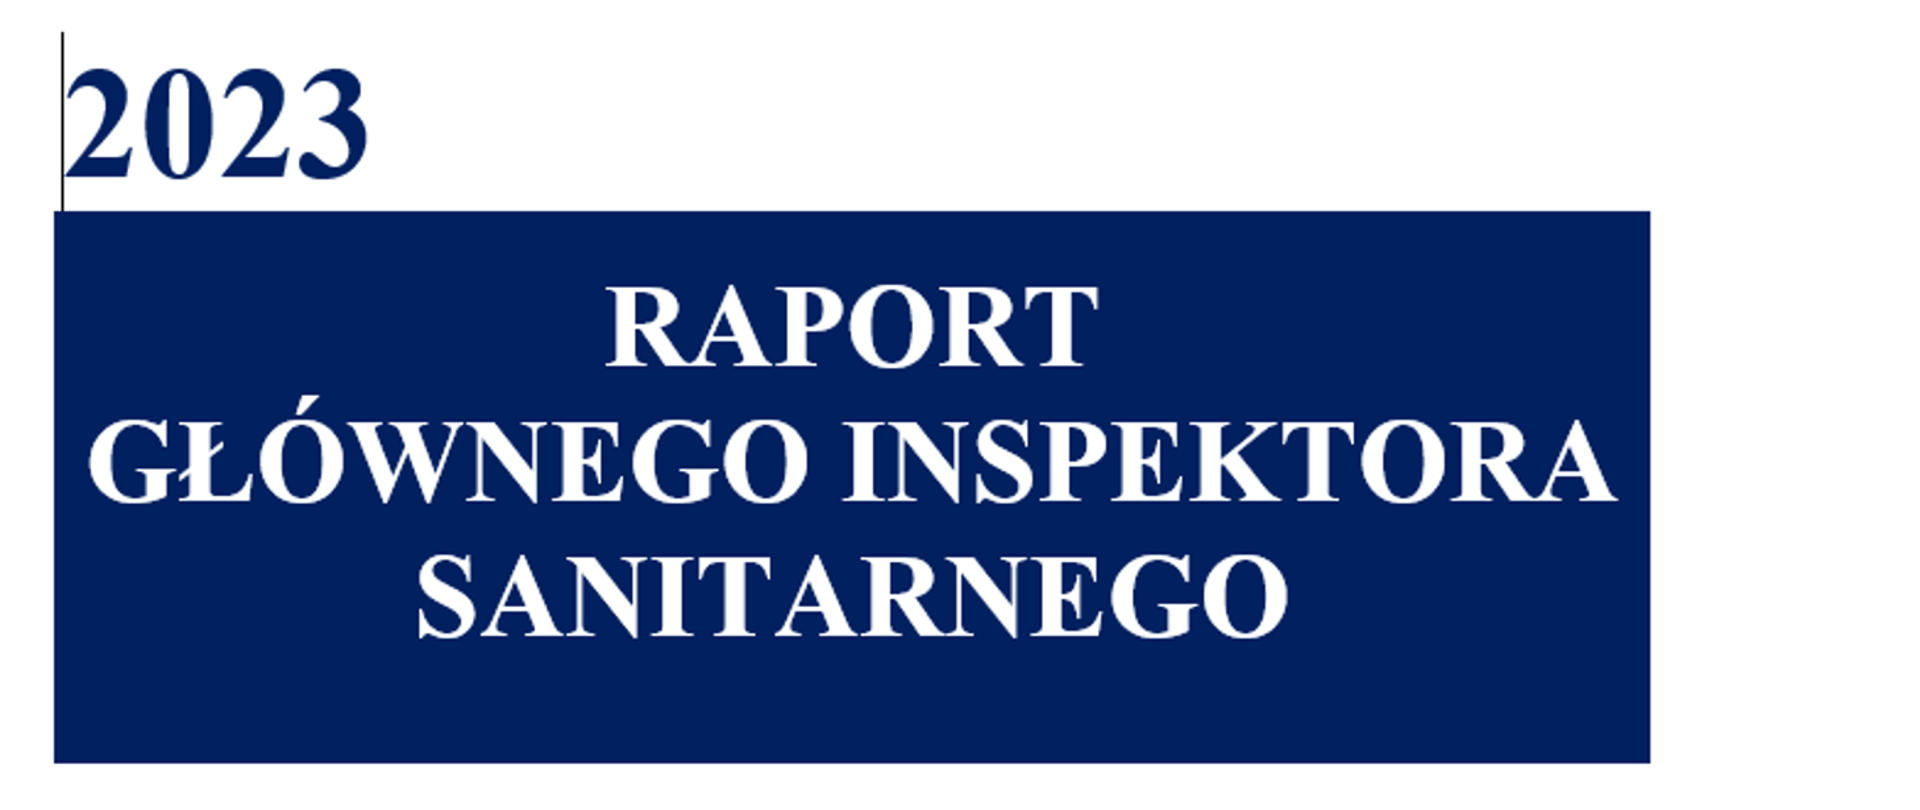 na niebieskim tle napis Raport głównego Inspektora Sanitarnego 2023